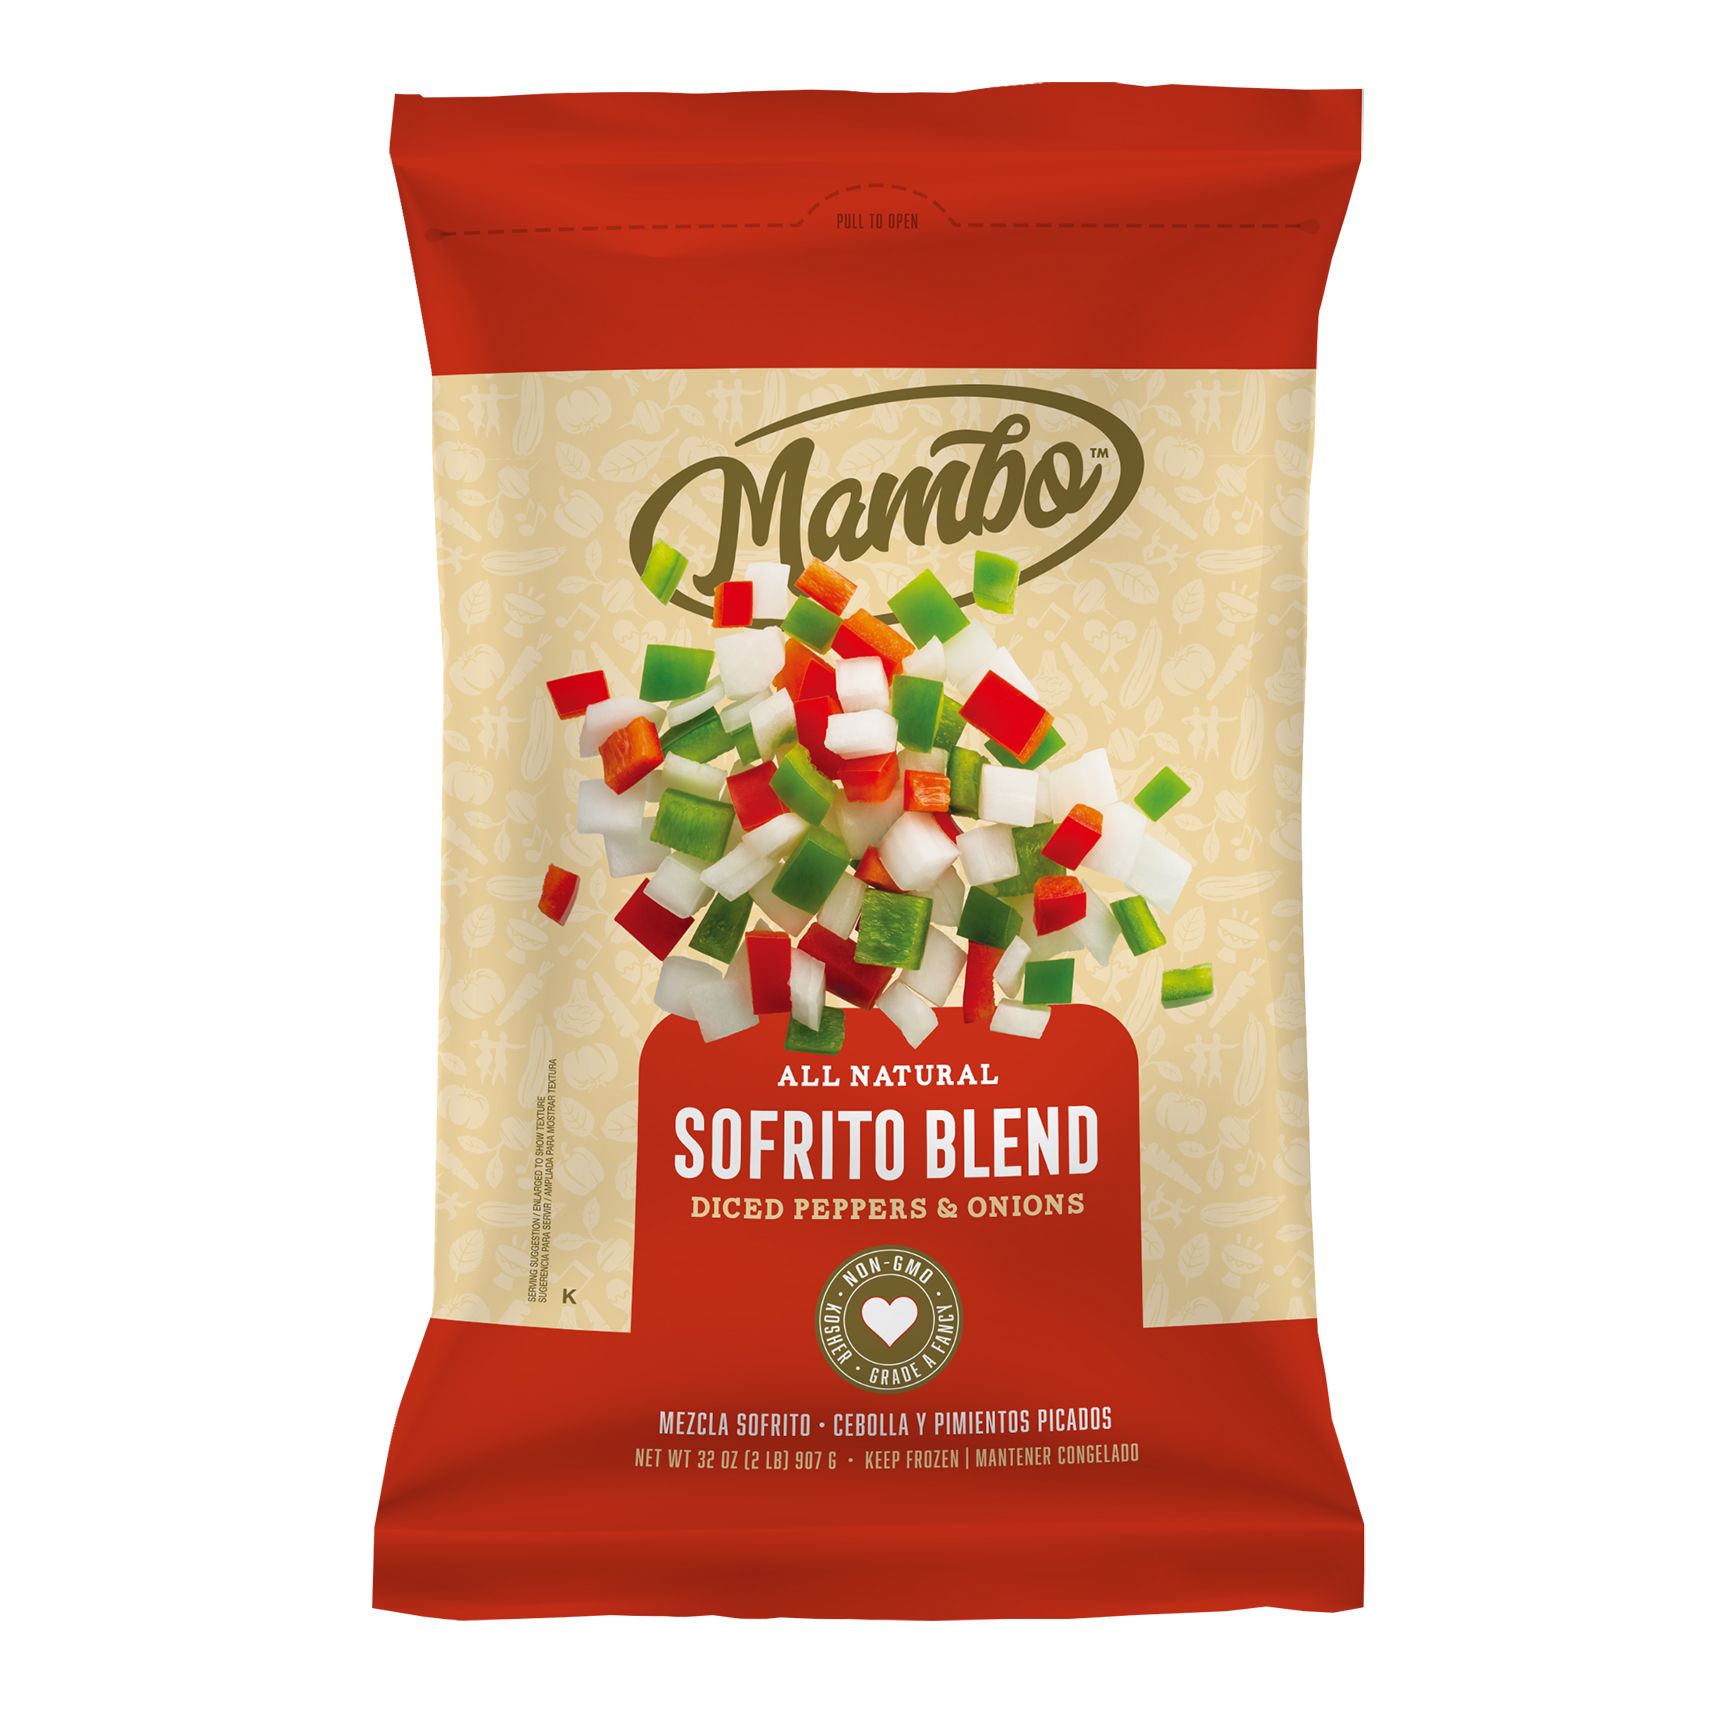 Mambo Sofrito Blend, 2 lbs.